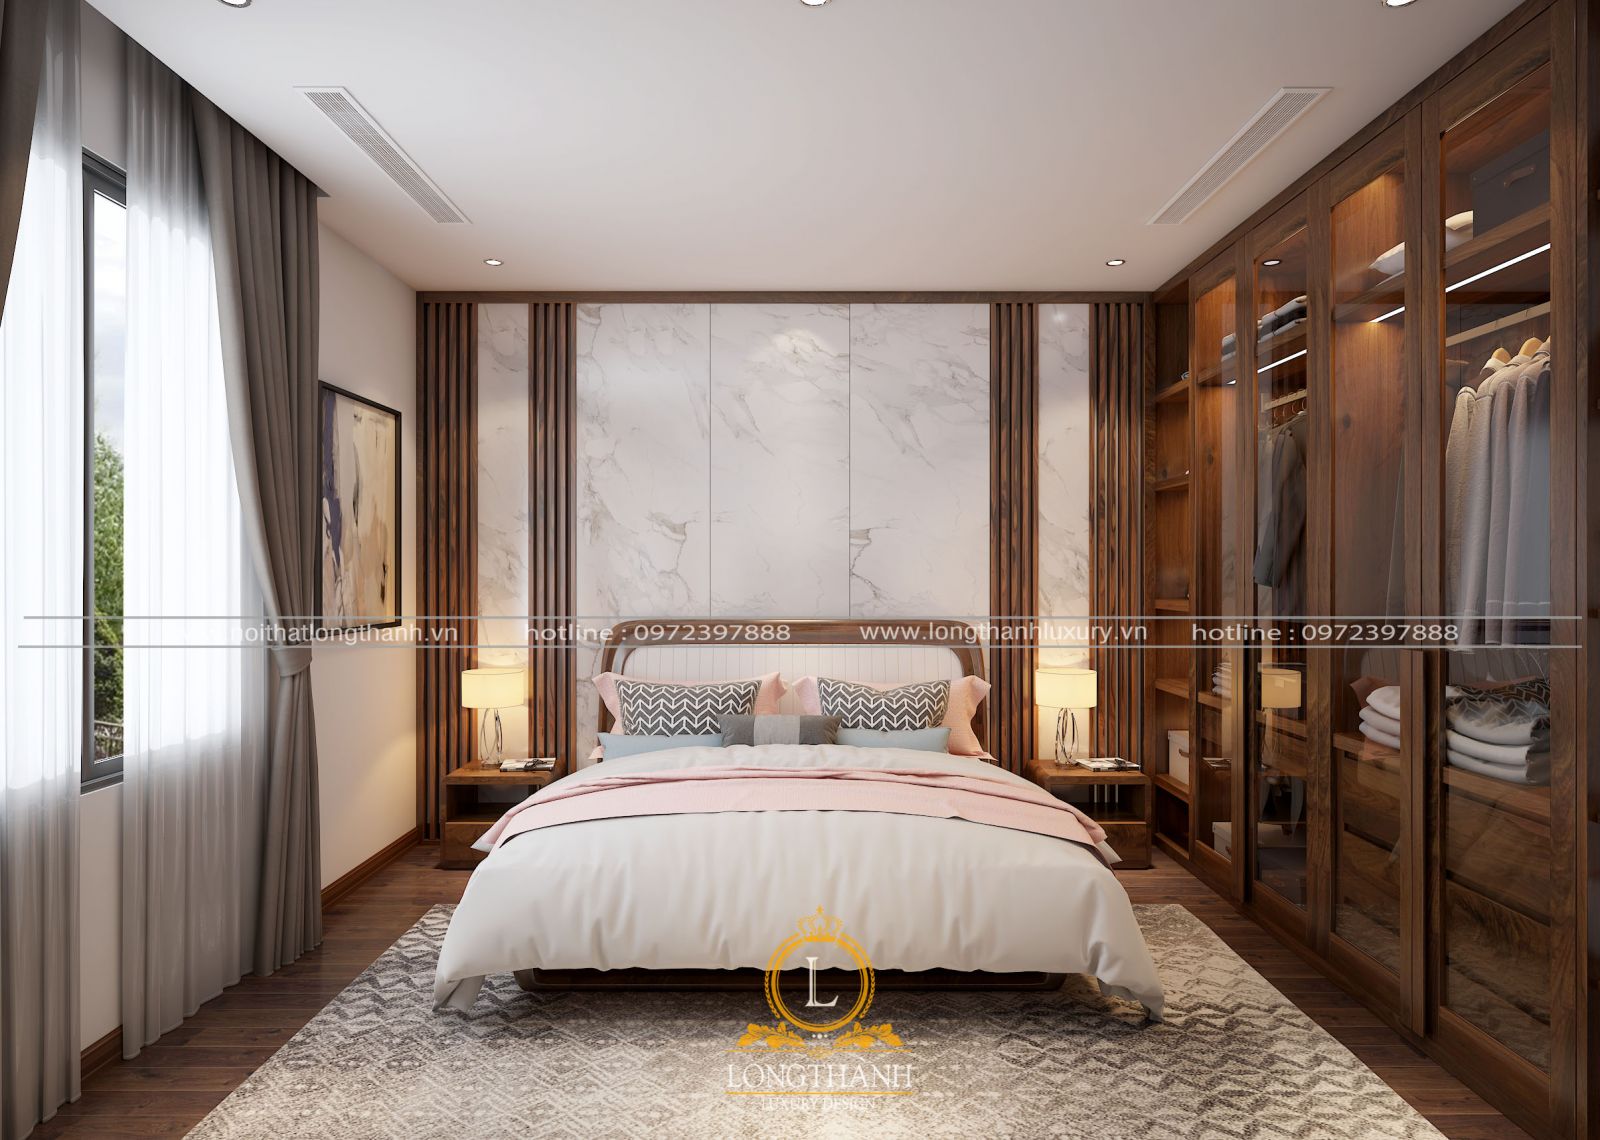 Cập nhật 20 mẫu thiết kế phòng ngủ Master hiện đại đẹp nhất 2021